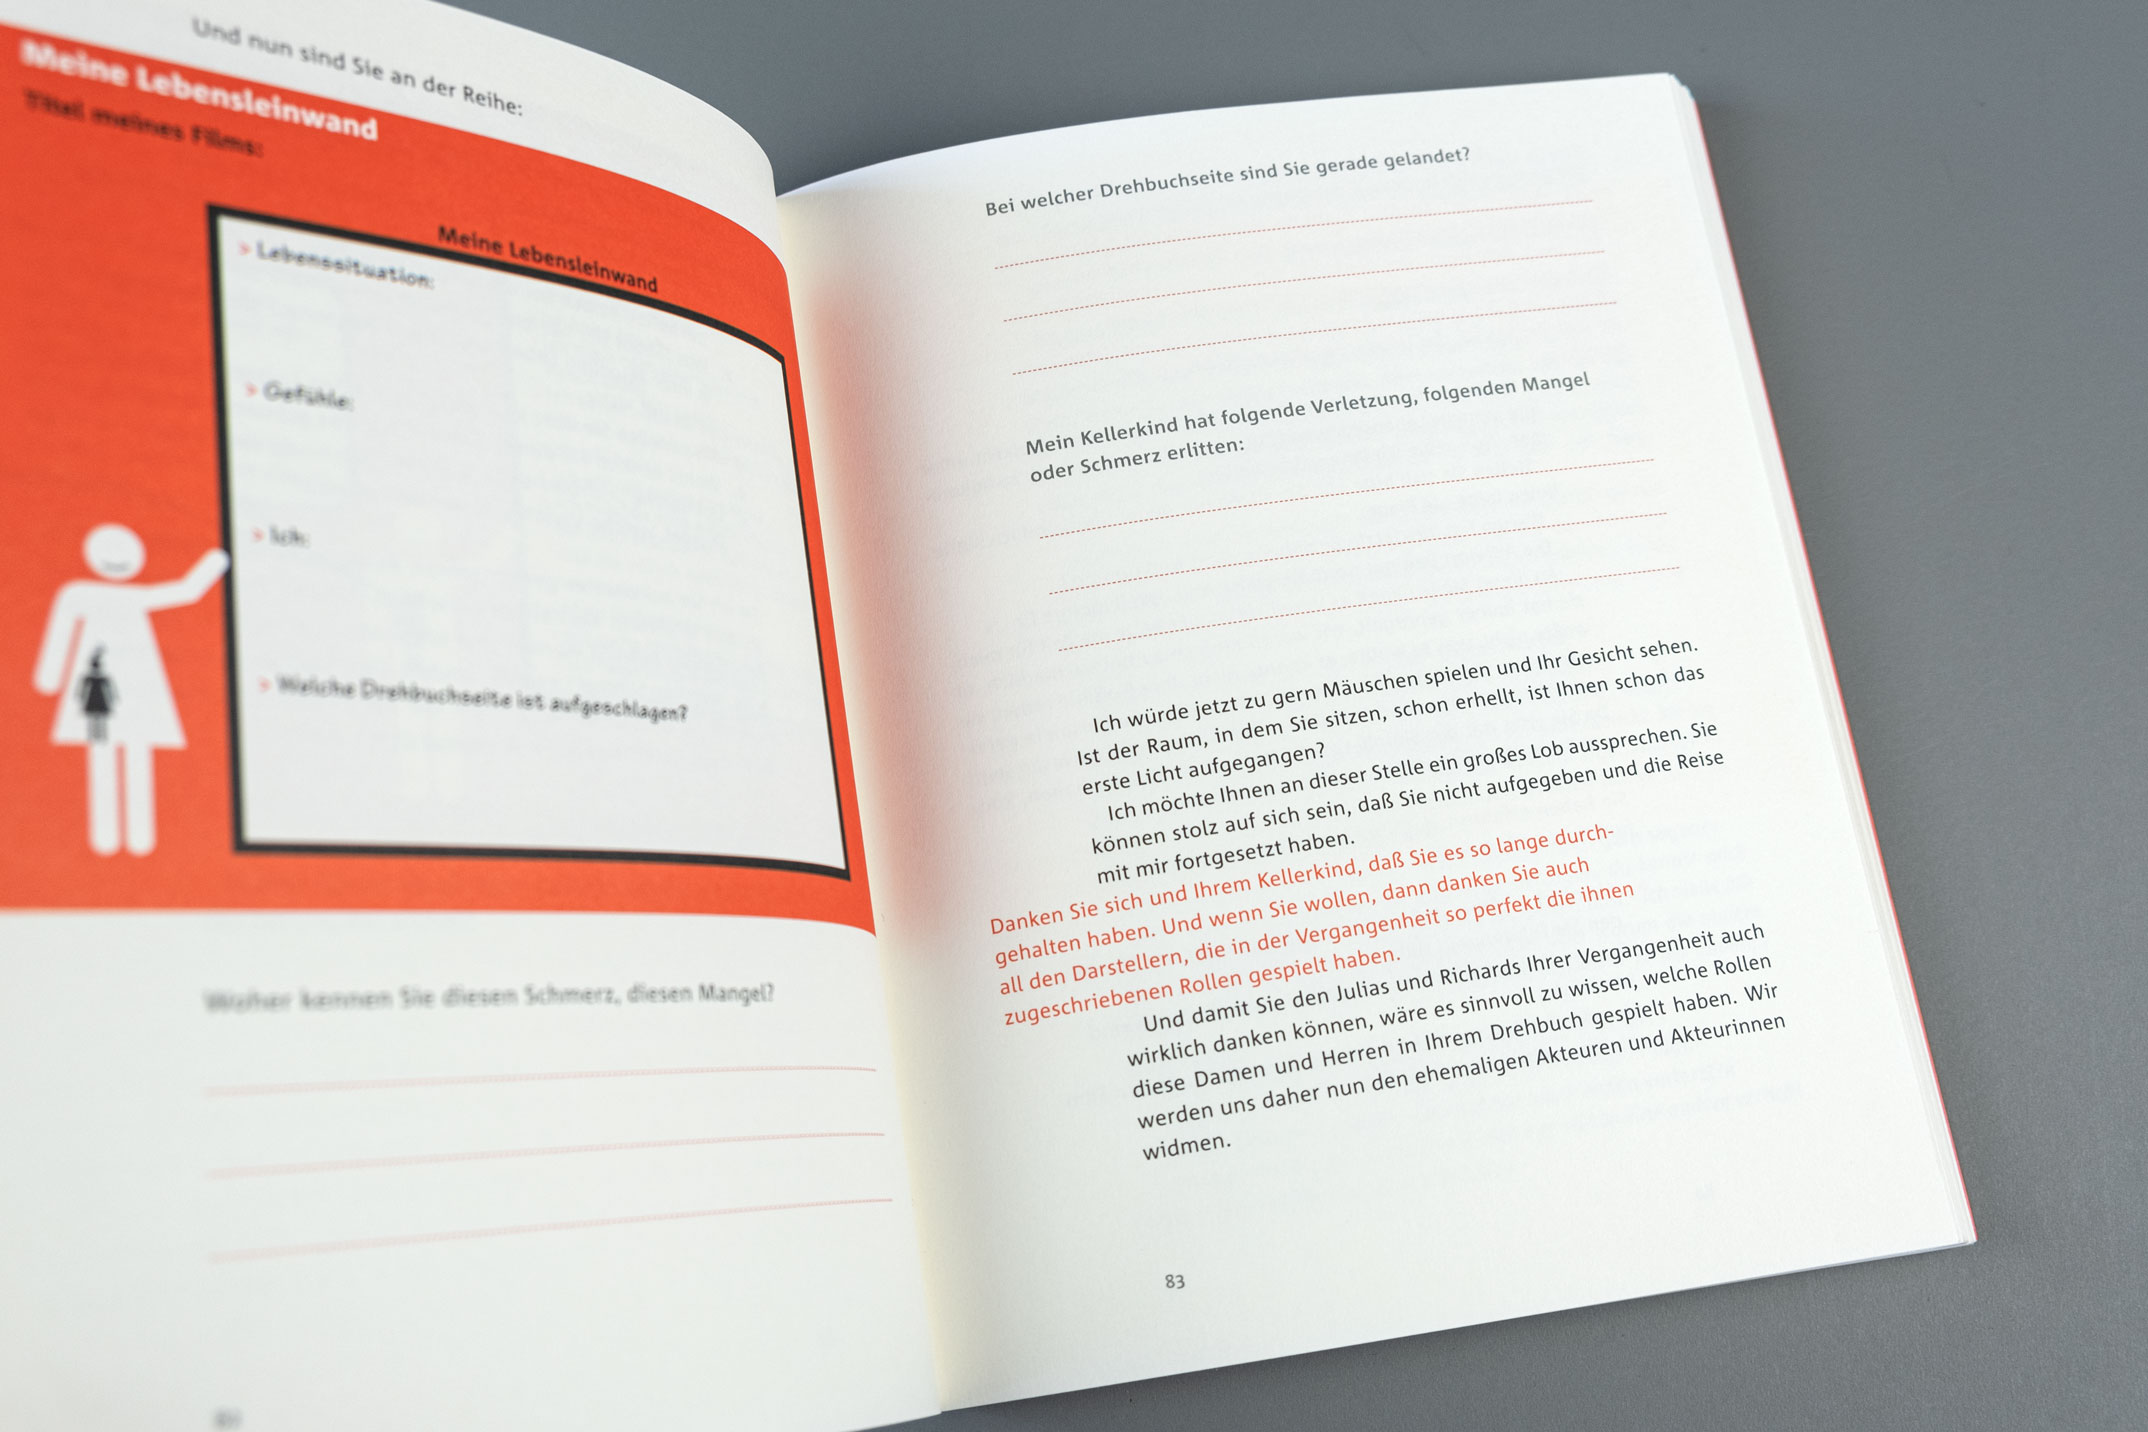 Buchgestaltung, Illustration und didaktische Typografie auf einer Doppelseite, Simply-Love-Strategie, Katja Sundermeier, Piper Verlag